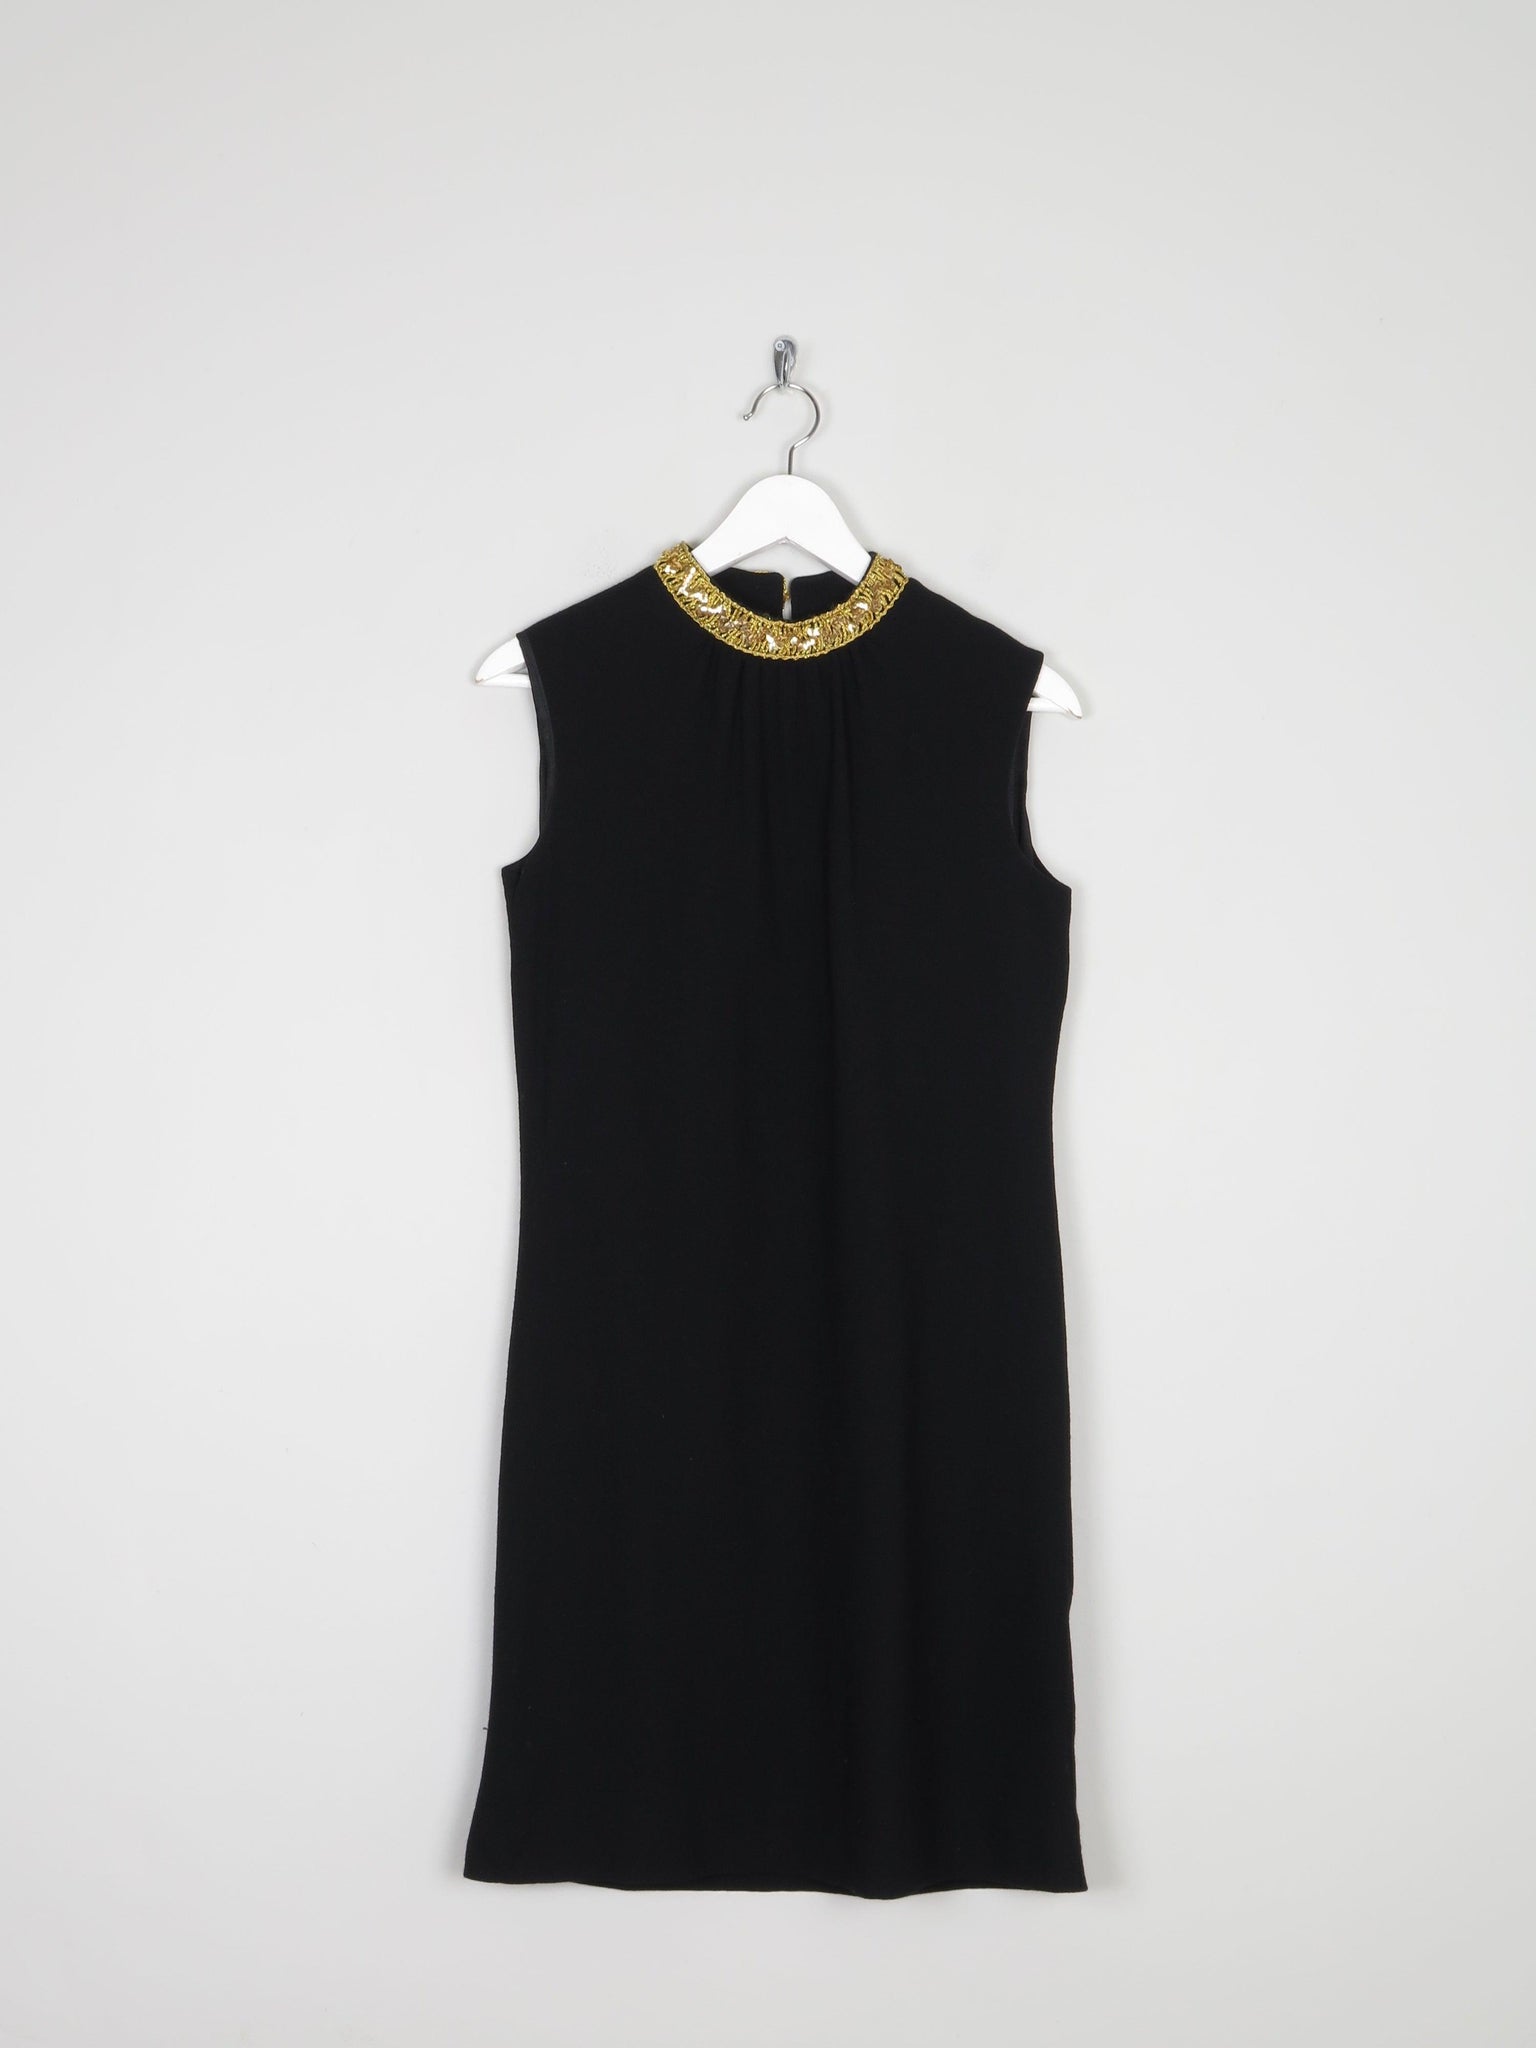 Vintage Little Black Dress 1950/60s 8/10 - The Harlequin